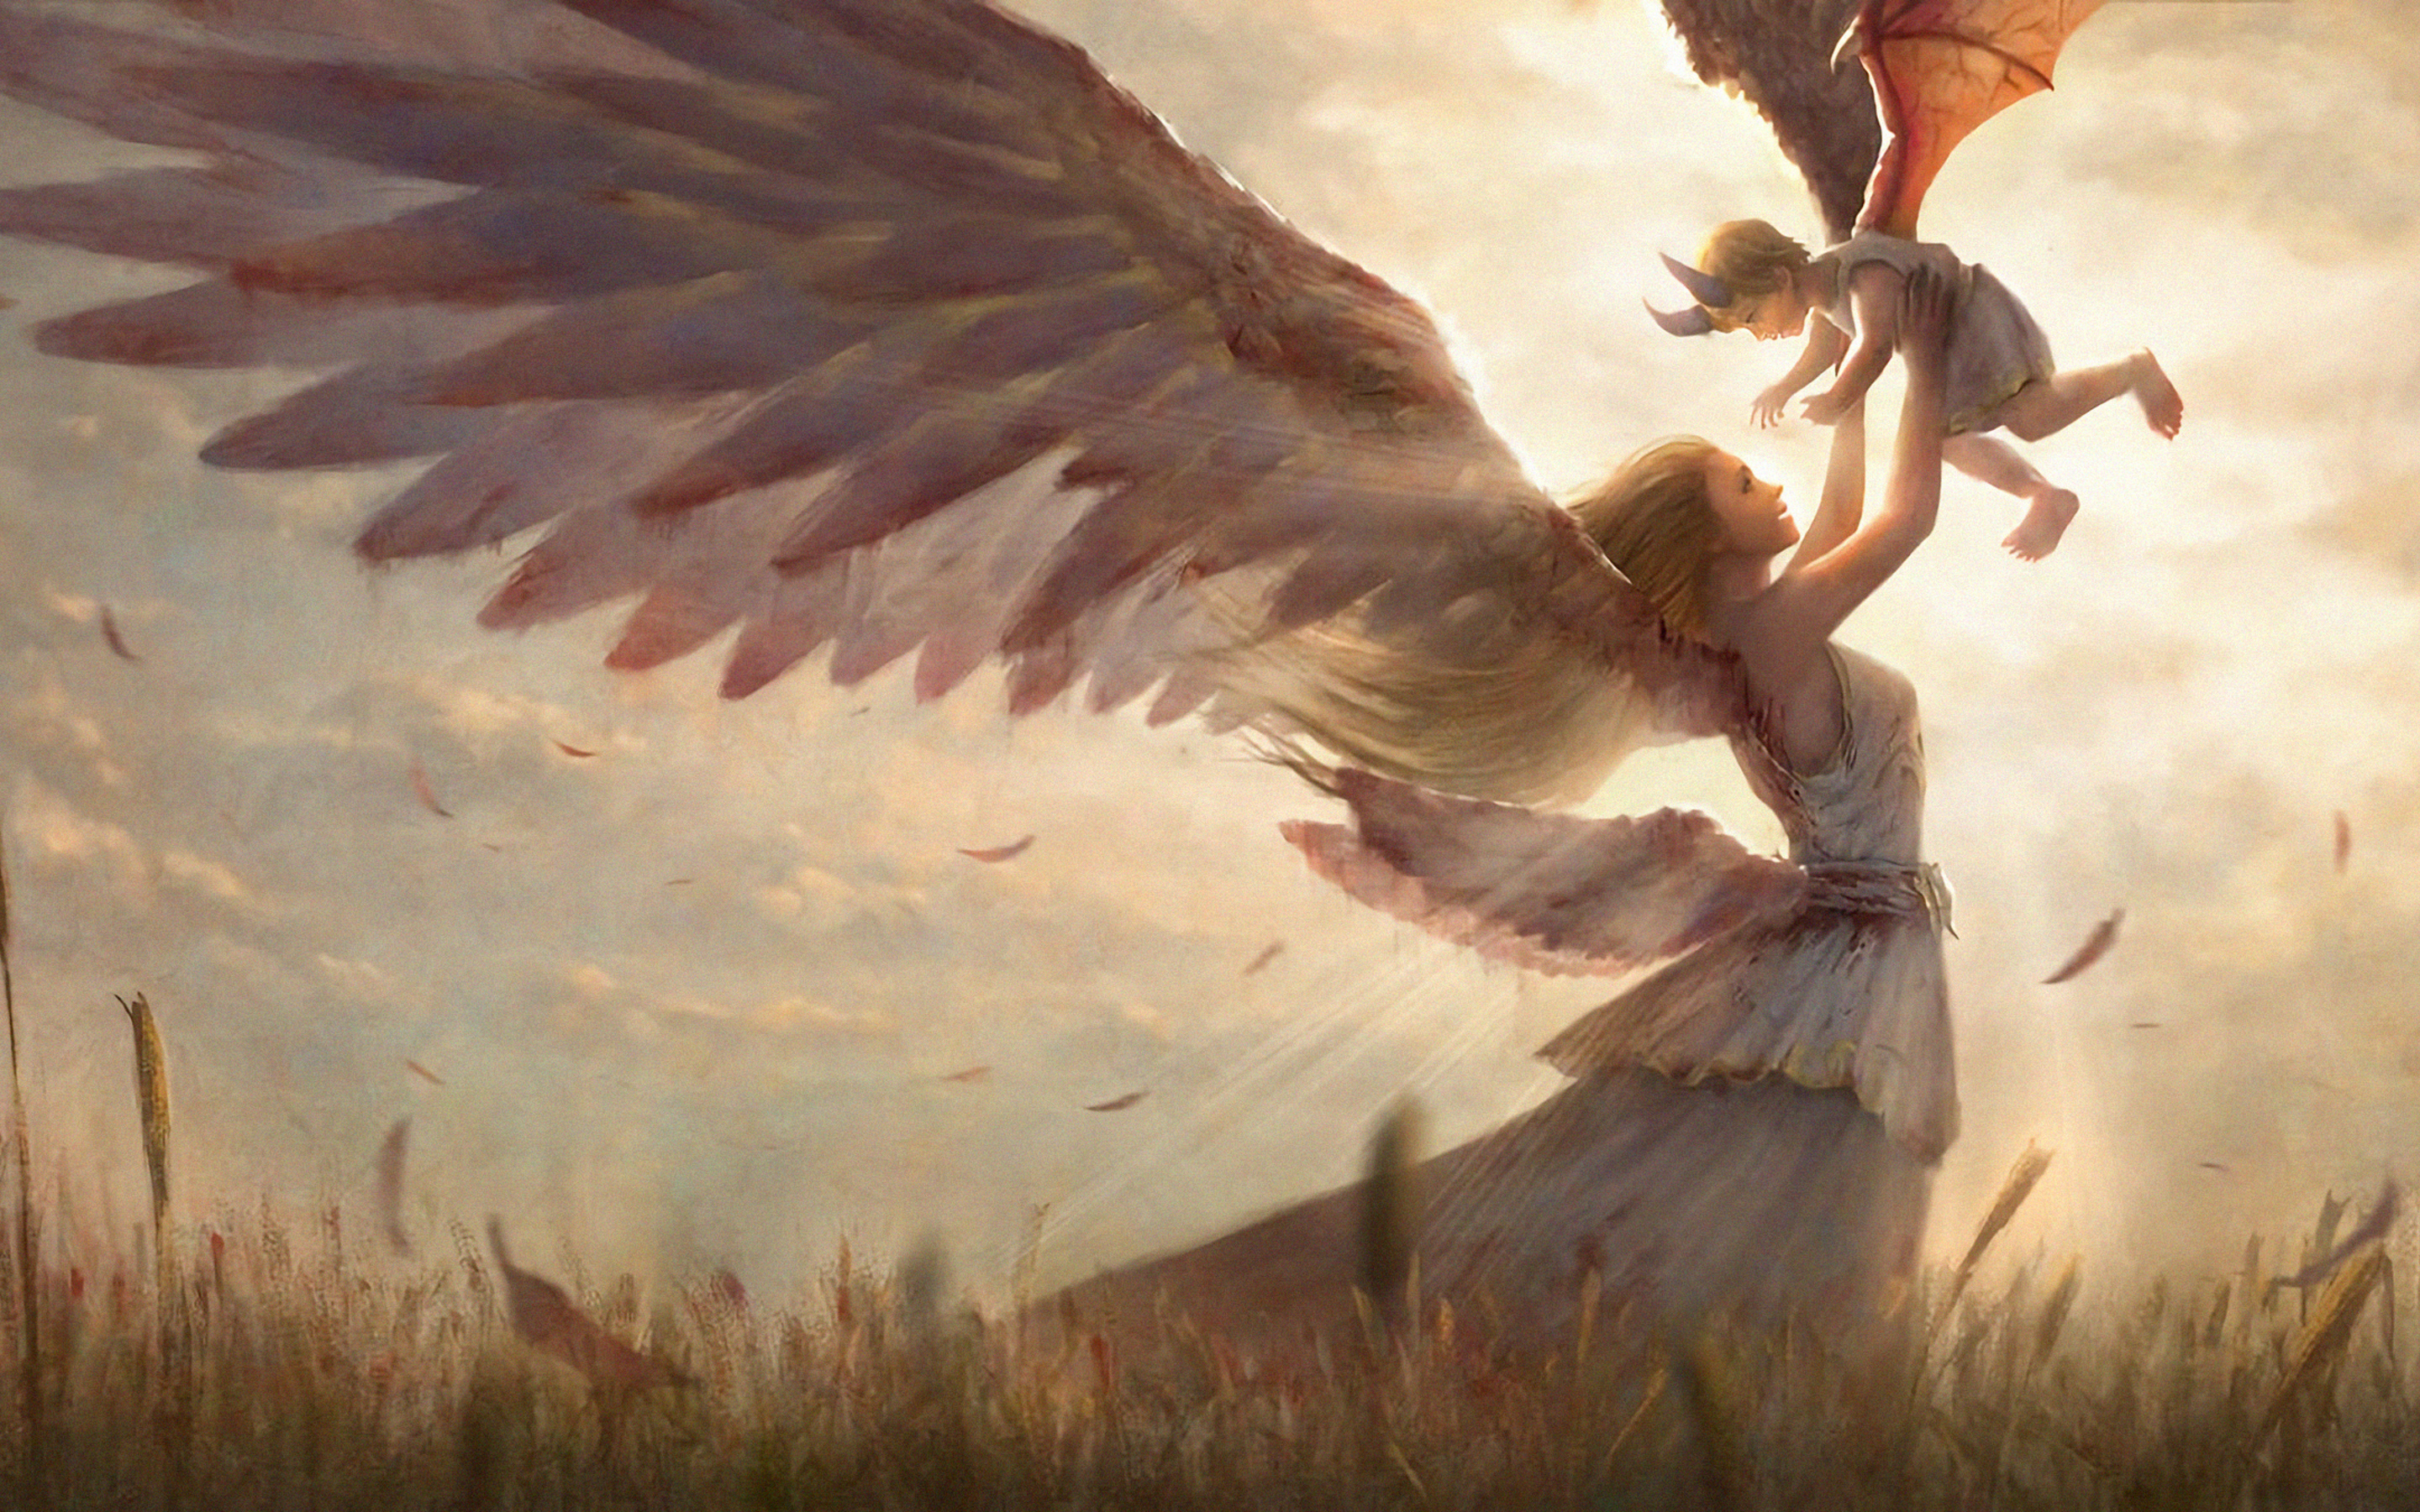 Сюжет два крыла. Человек с крыльями. Крылья демона. Девушка - ангел. Картинки ангелов.